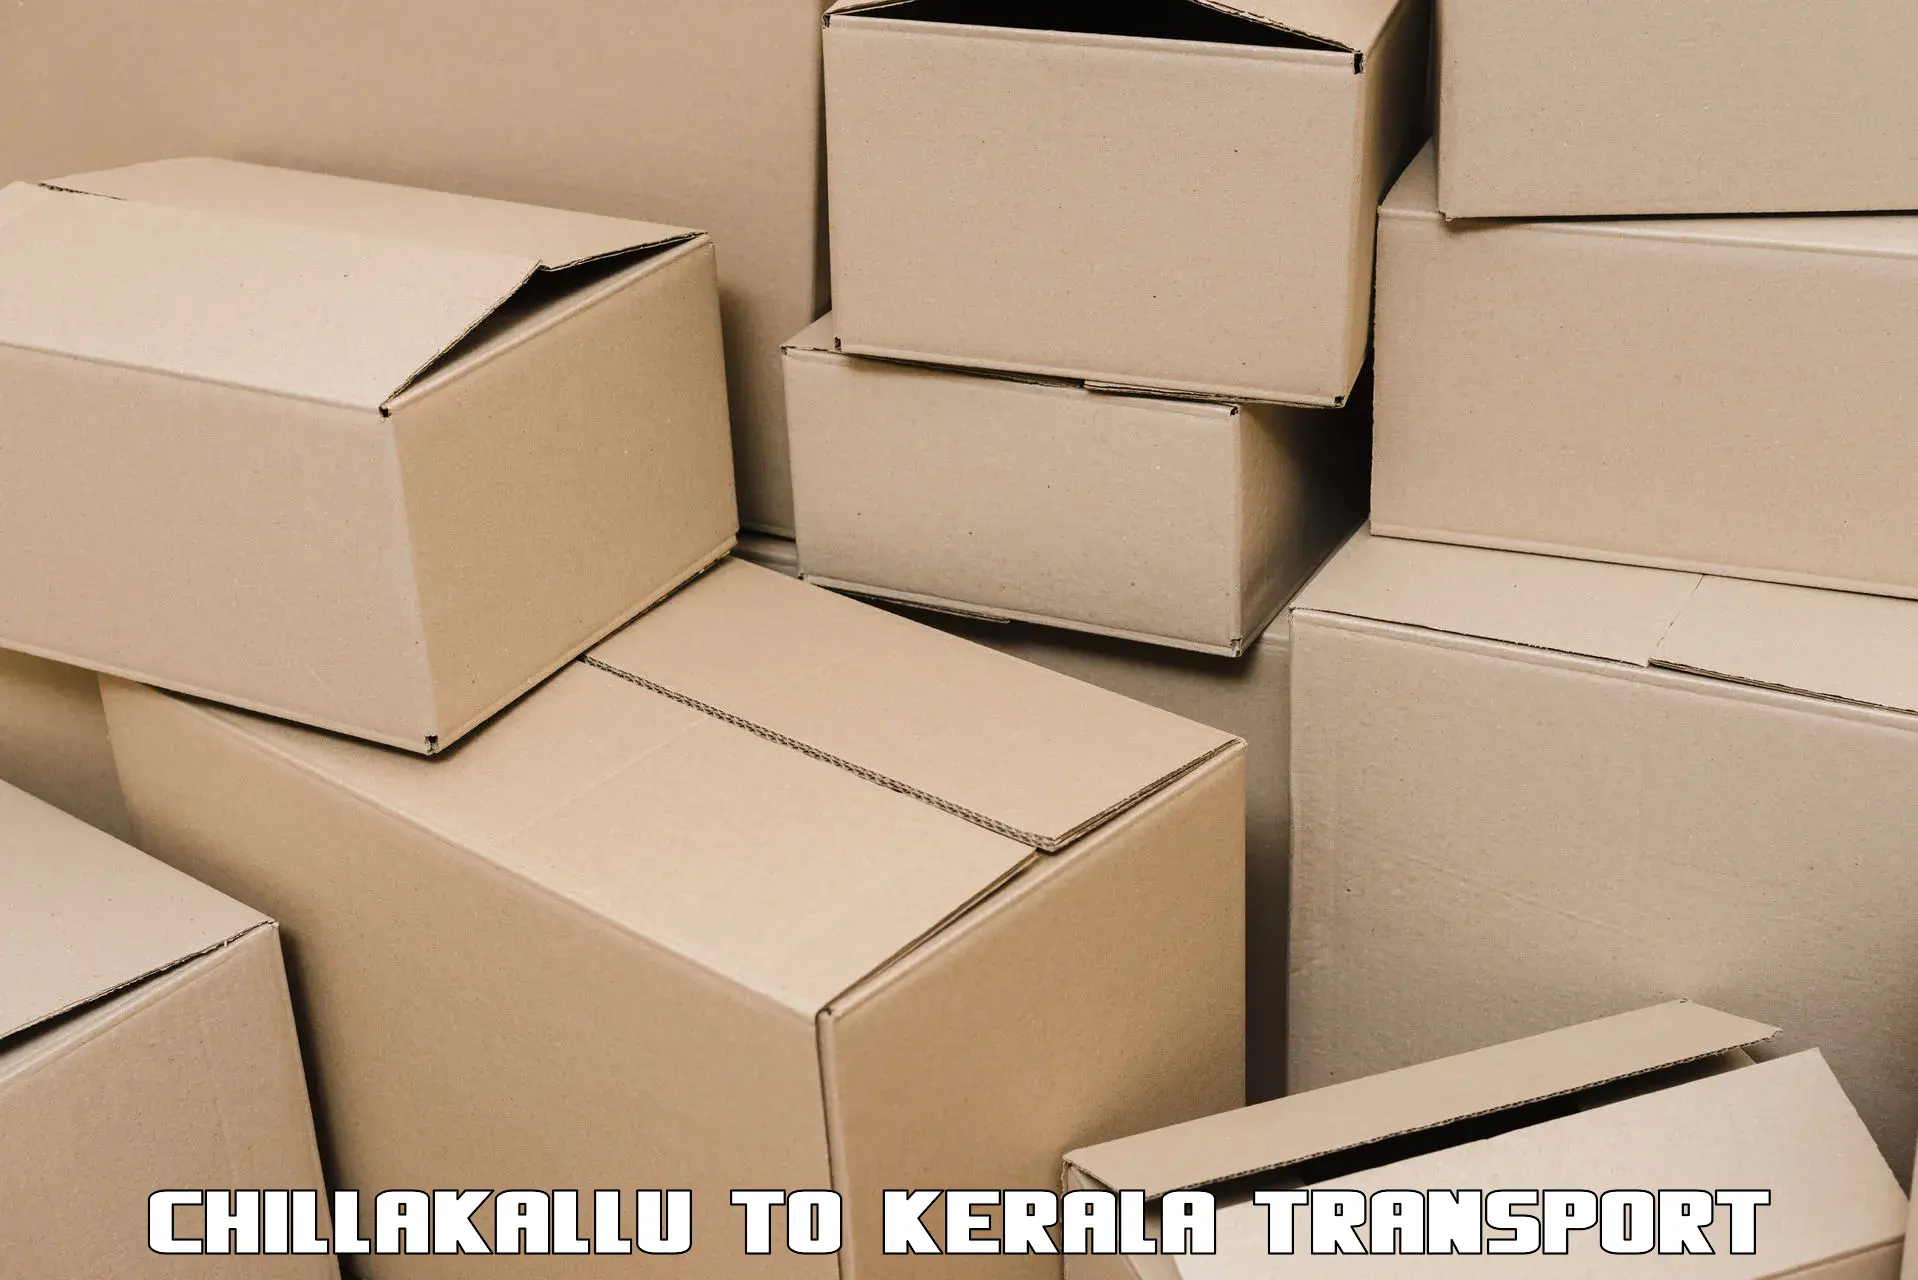 Truck transport companies in India Chillakallu to Kakkur